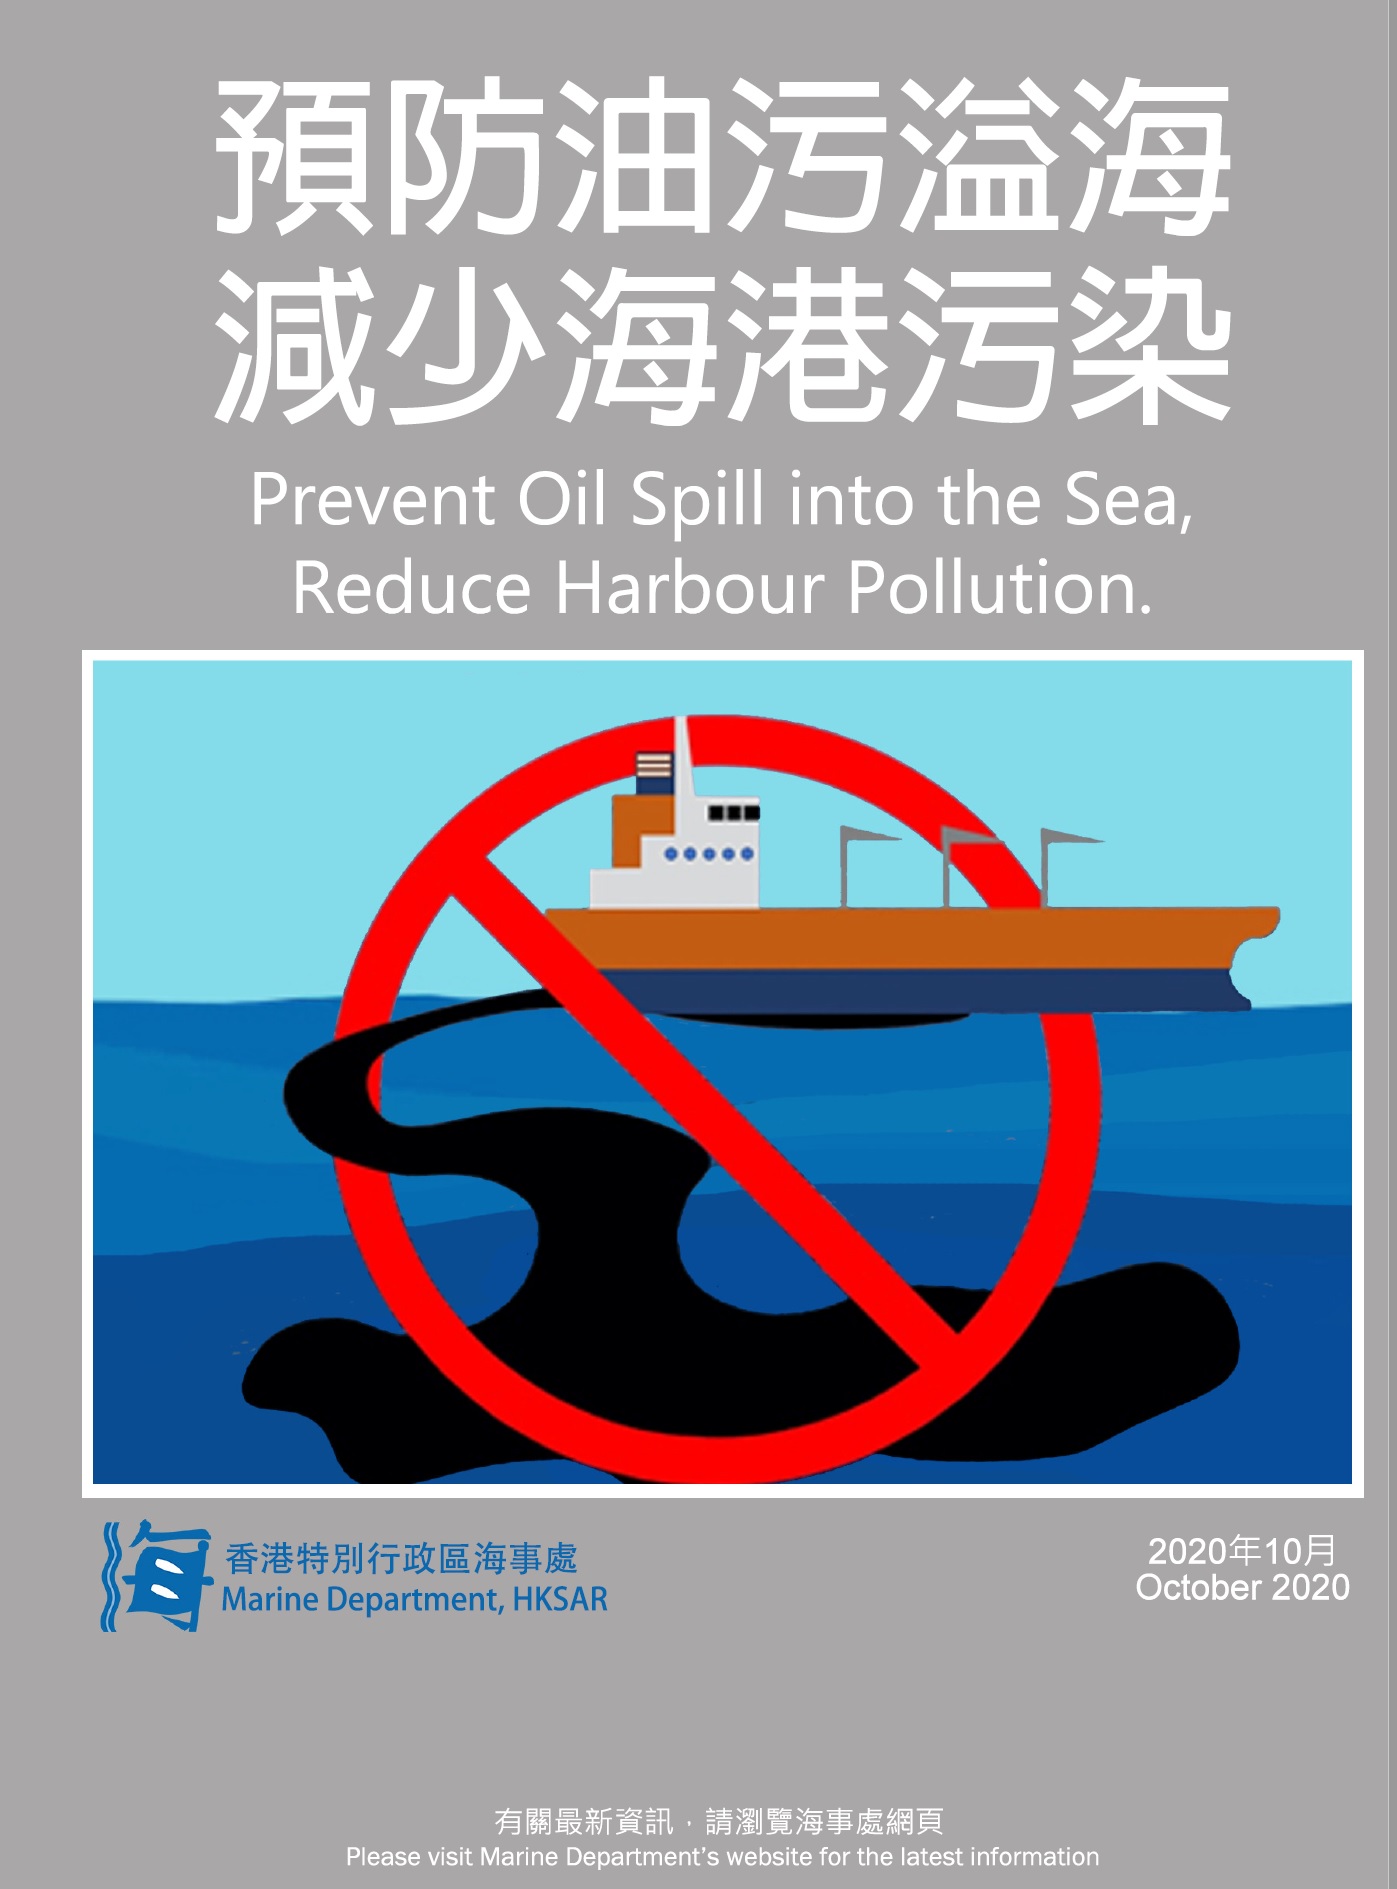 预防油污溢海 减少海港污染